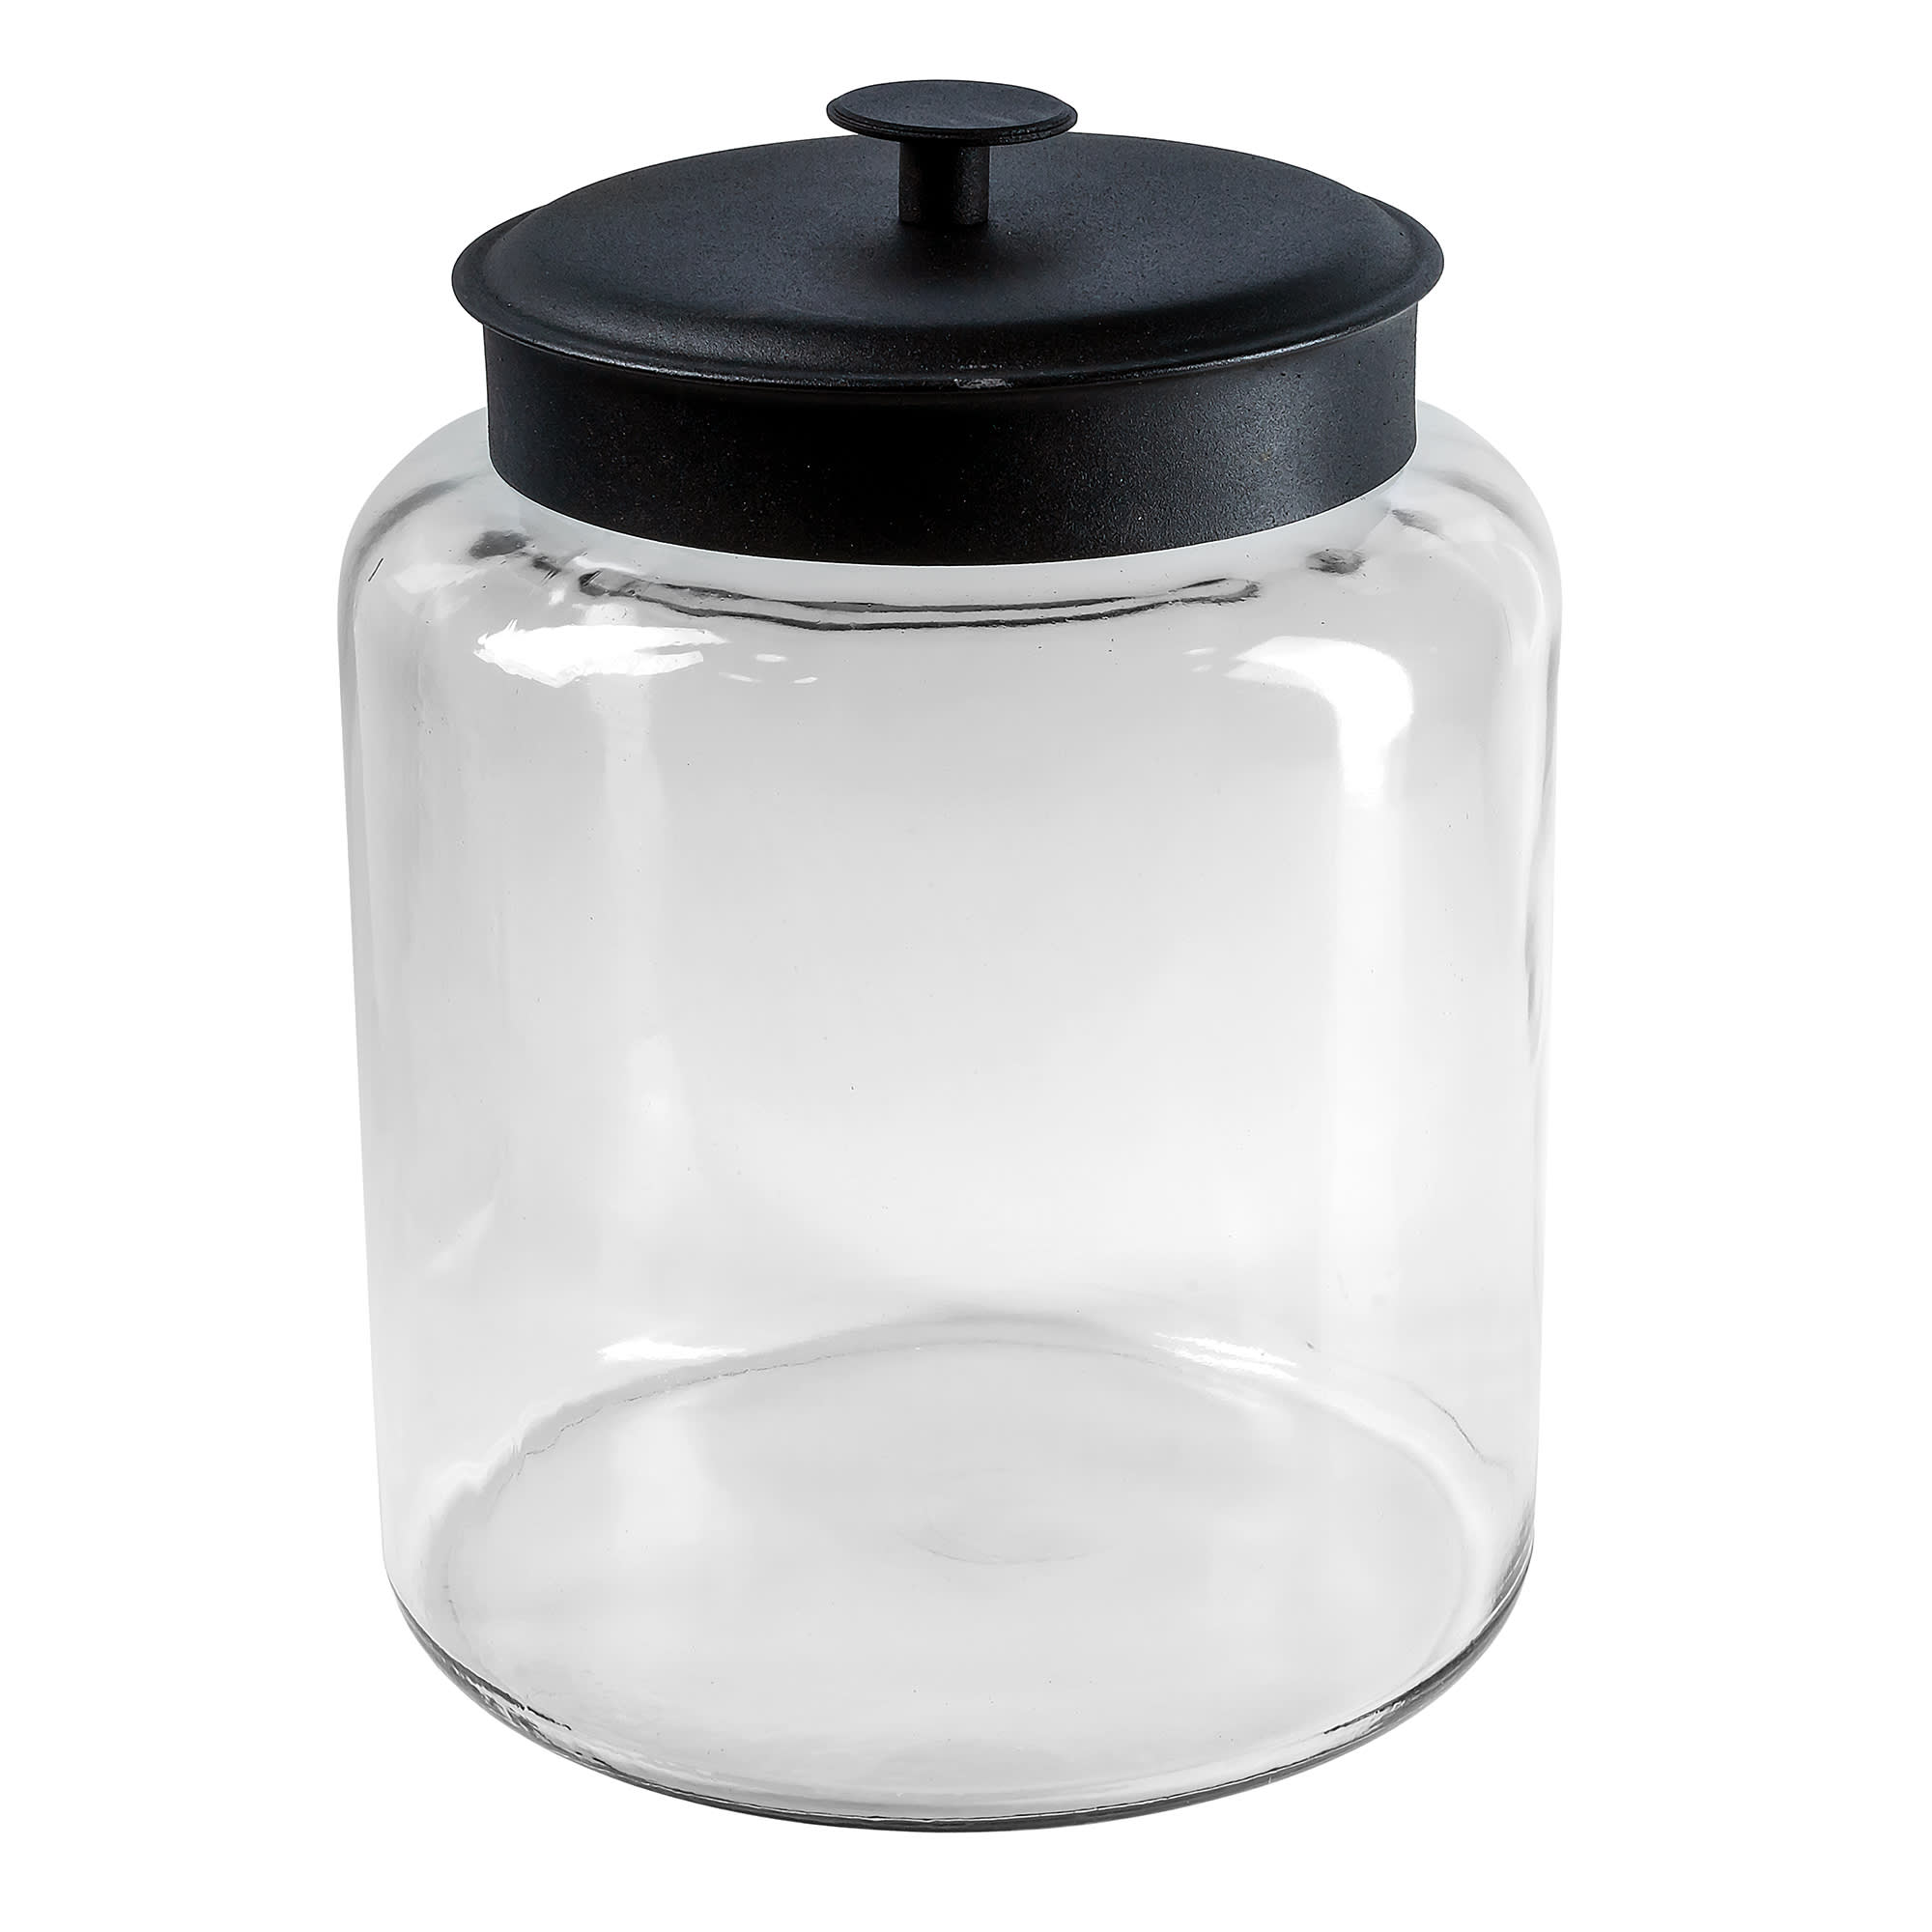 2 1/2 Gallon Anchor Montana Jar with Silver Metal Cover